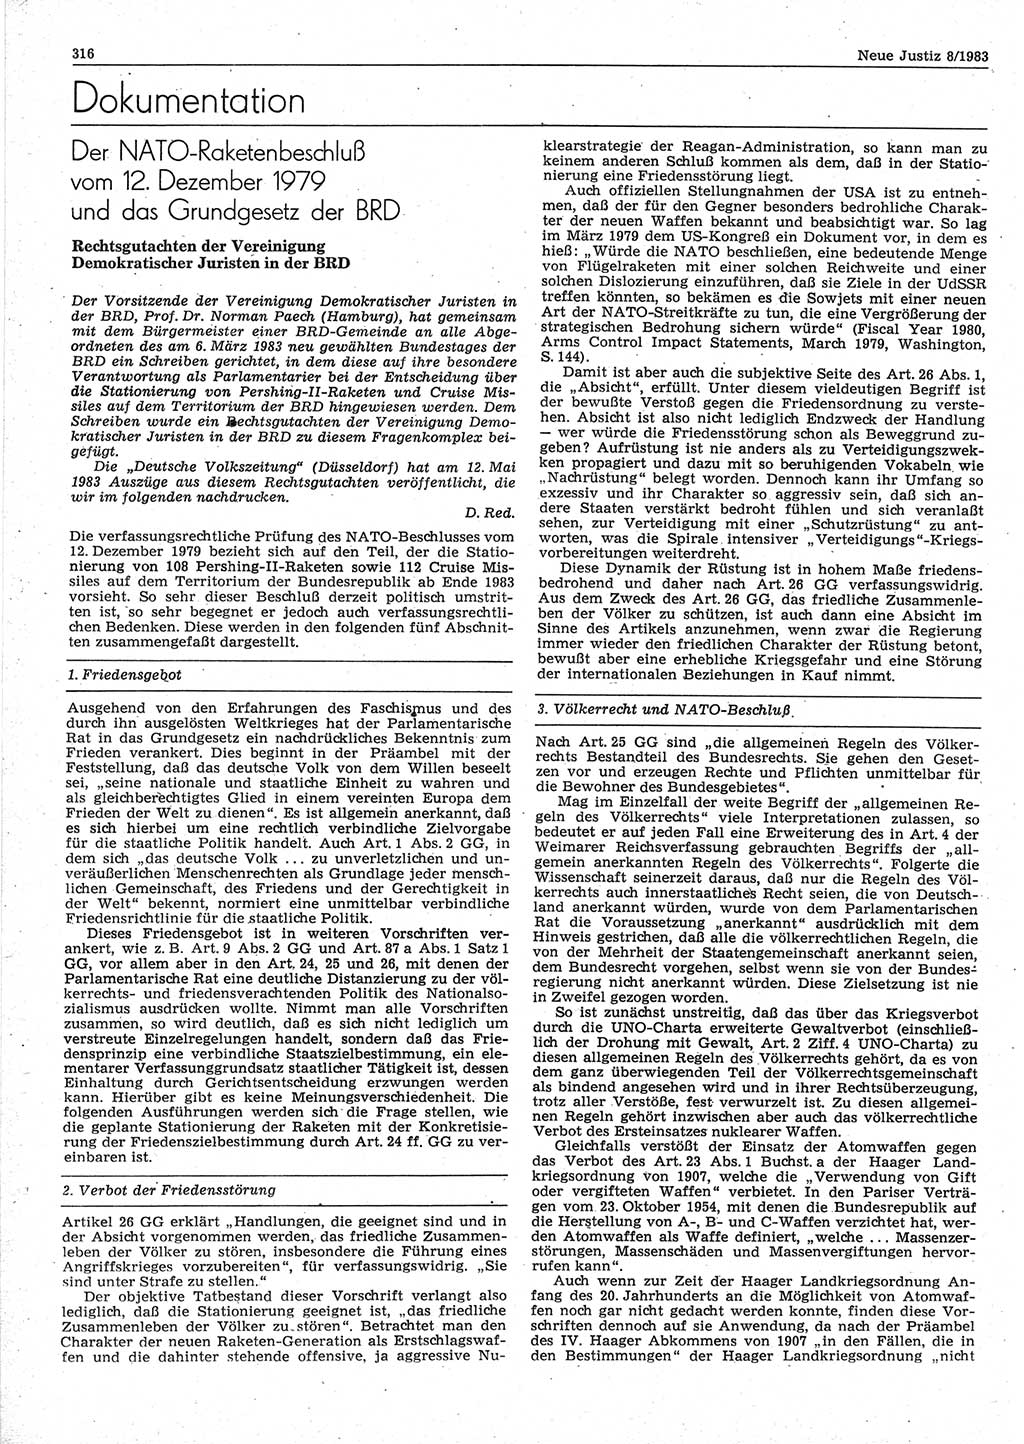 Neue Justiz (NJ), Zeitschrift für sozialistisches Recht und Gesetzlichkeit [Deutsche Demokratische Republik (DDR)], 37. Jahrgang 1983, Seite 316 (NJ DDR 1983, S. 316)